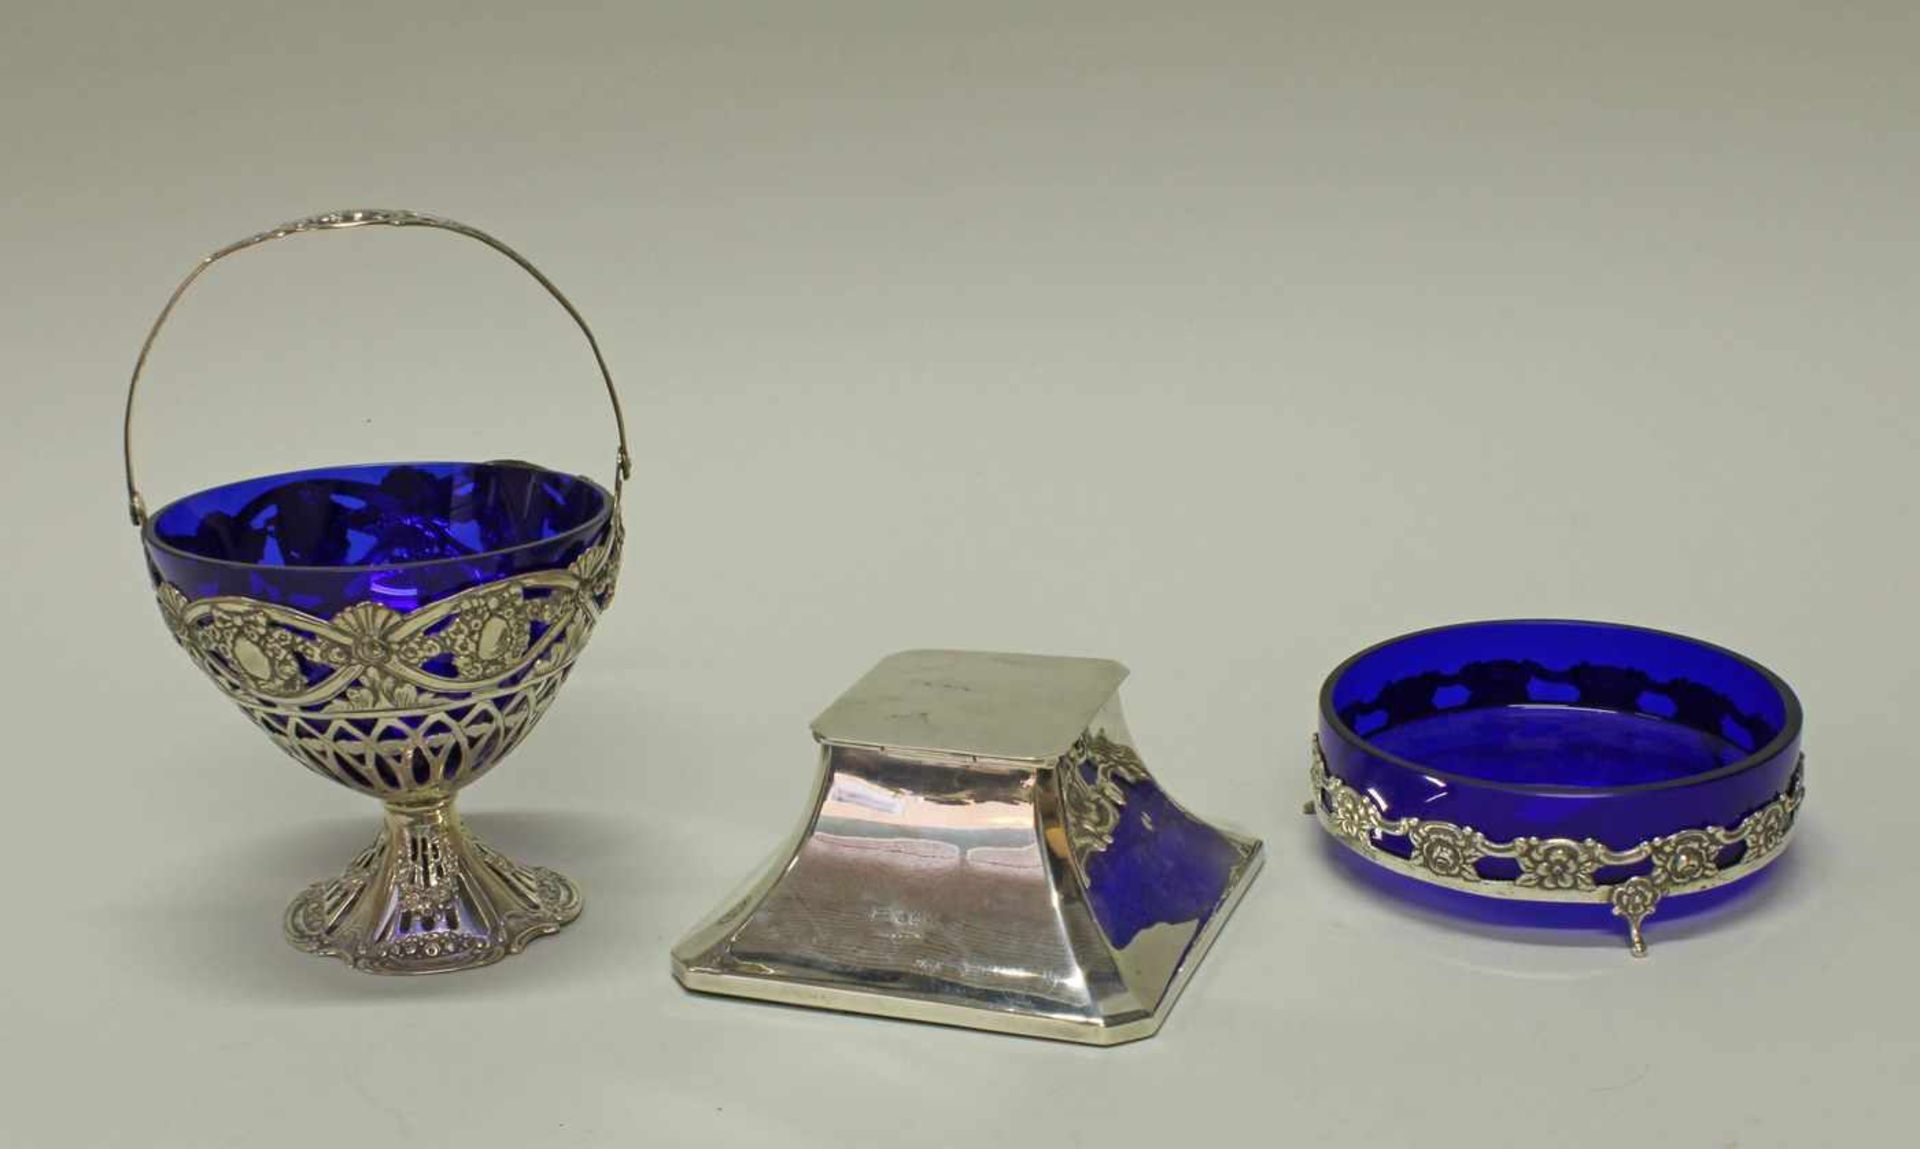 Schale, Henkelkorb, Silber 800/835, à jour gearbeitet, Blütenzier, blaue Glaseinsätze, 4-12 cm hoch, - Image 2 of 2